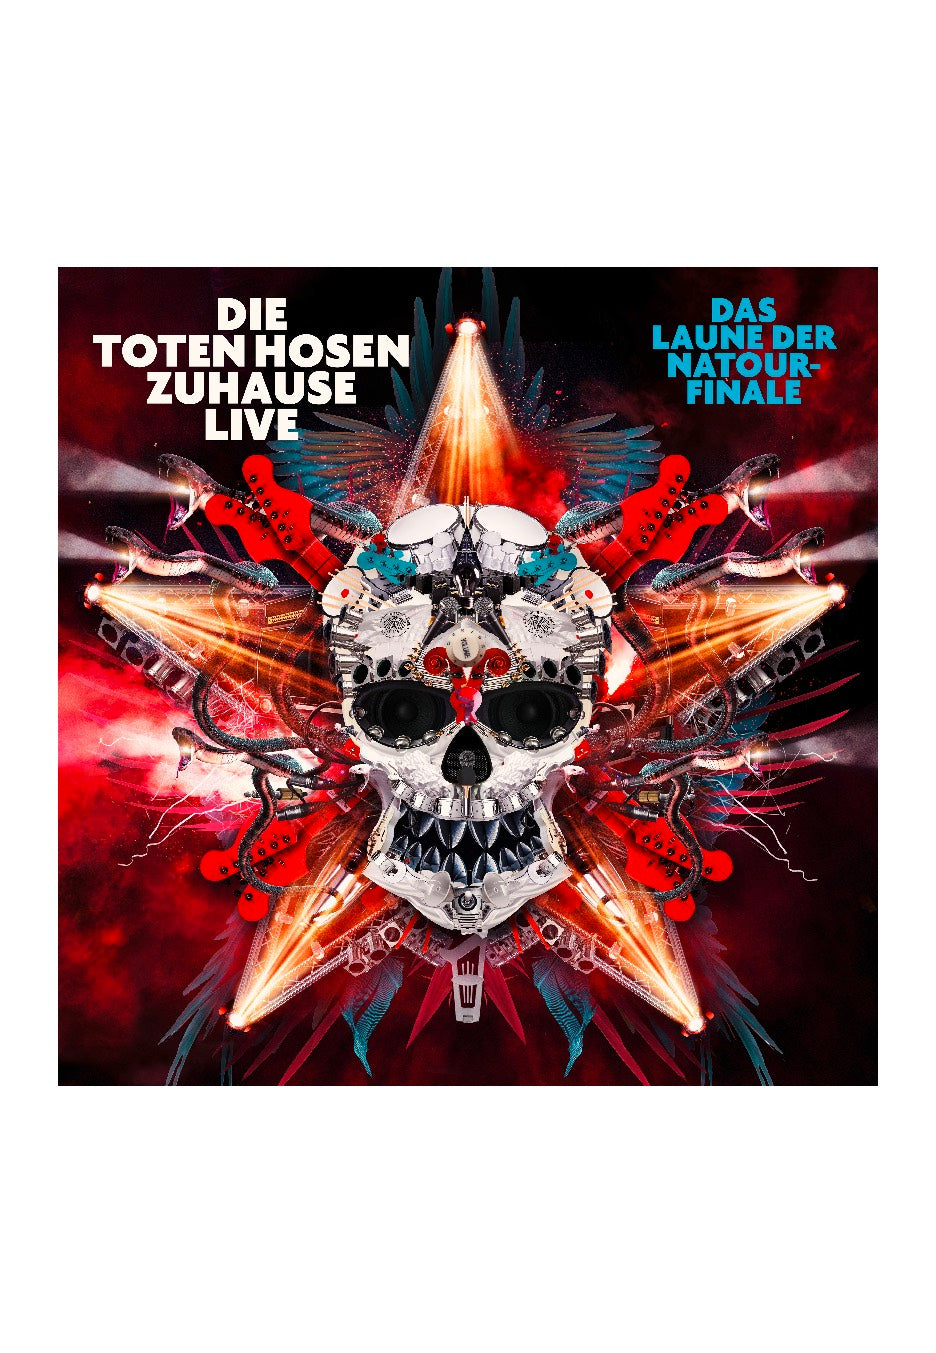 Die Toten Hosen - Zuhause Live: Das Laune der Natour Finale - 2 CD | Neutral-Image